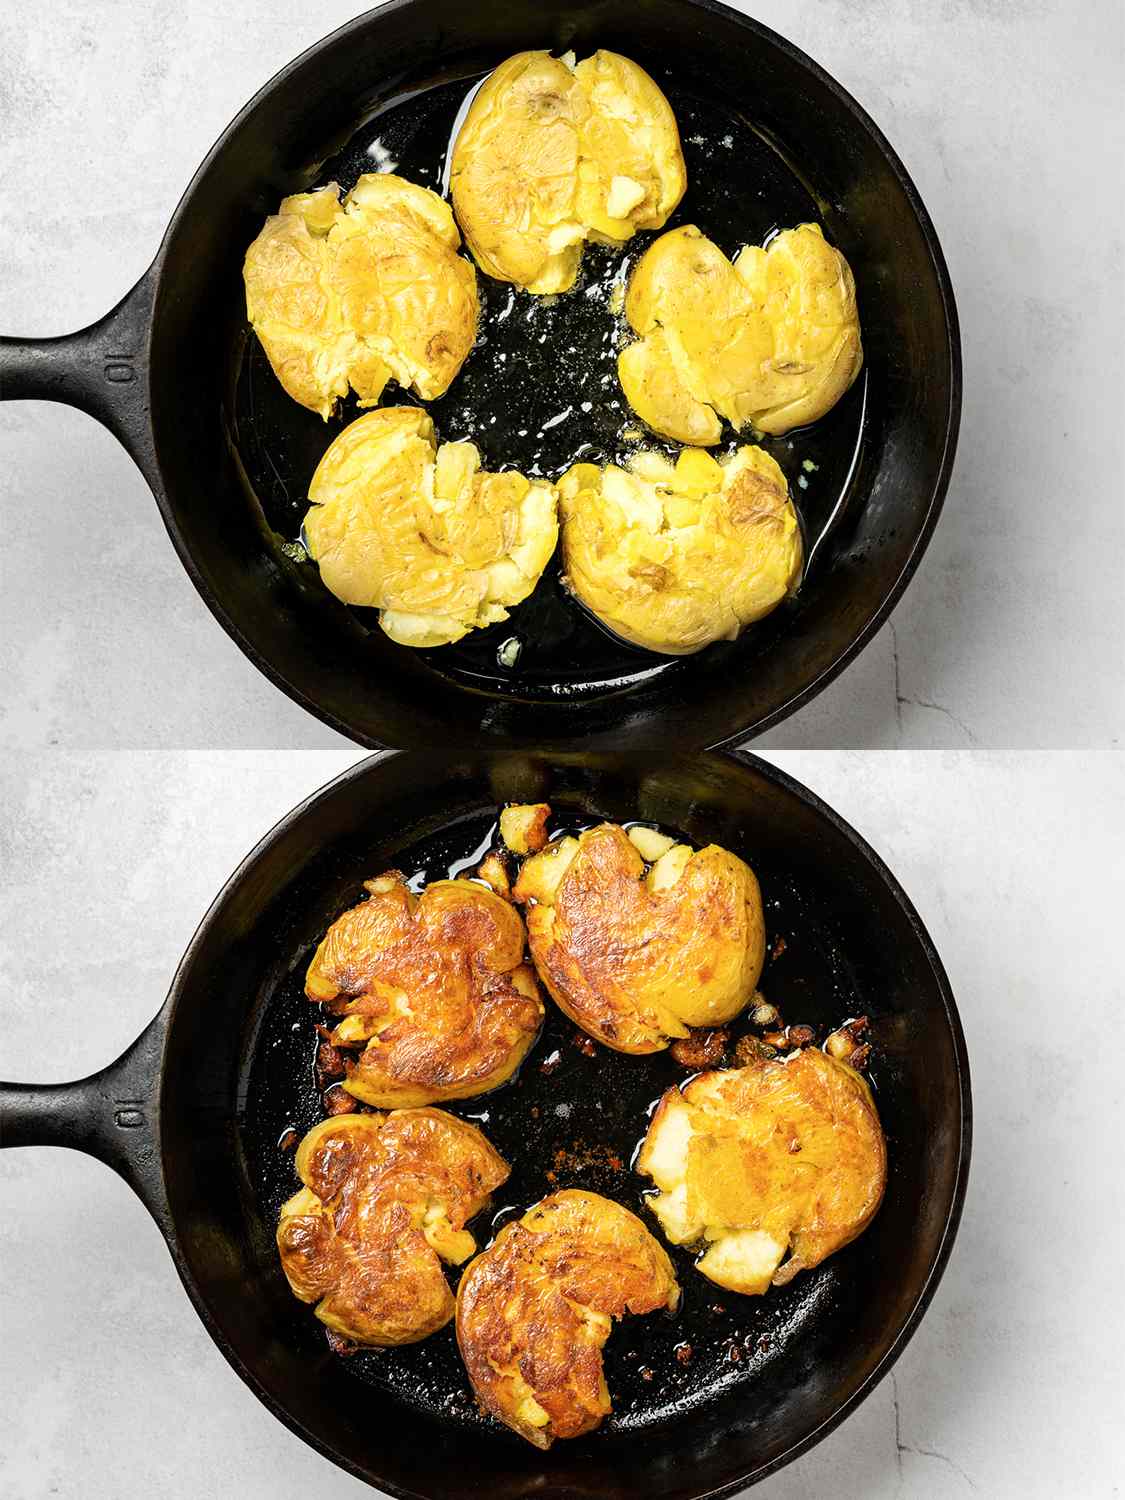 两幅图像的拼贴画。上图显示的是五个捣碎的土豆被放入盛有半杯热油的铸铁锅中。下面的图片显示了平底锅里的土豆，翻转过来，可以看到它们已经变成了金黄色。